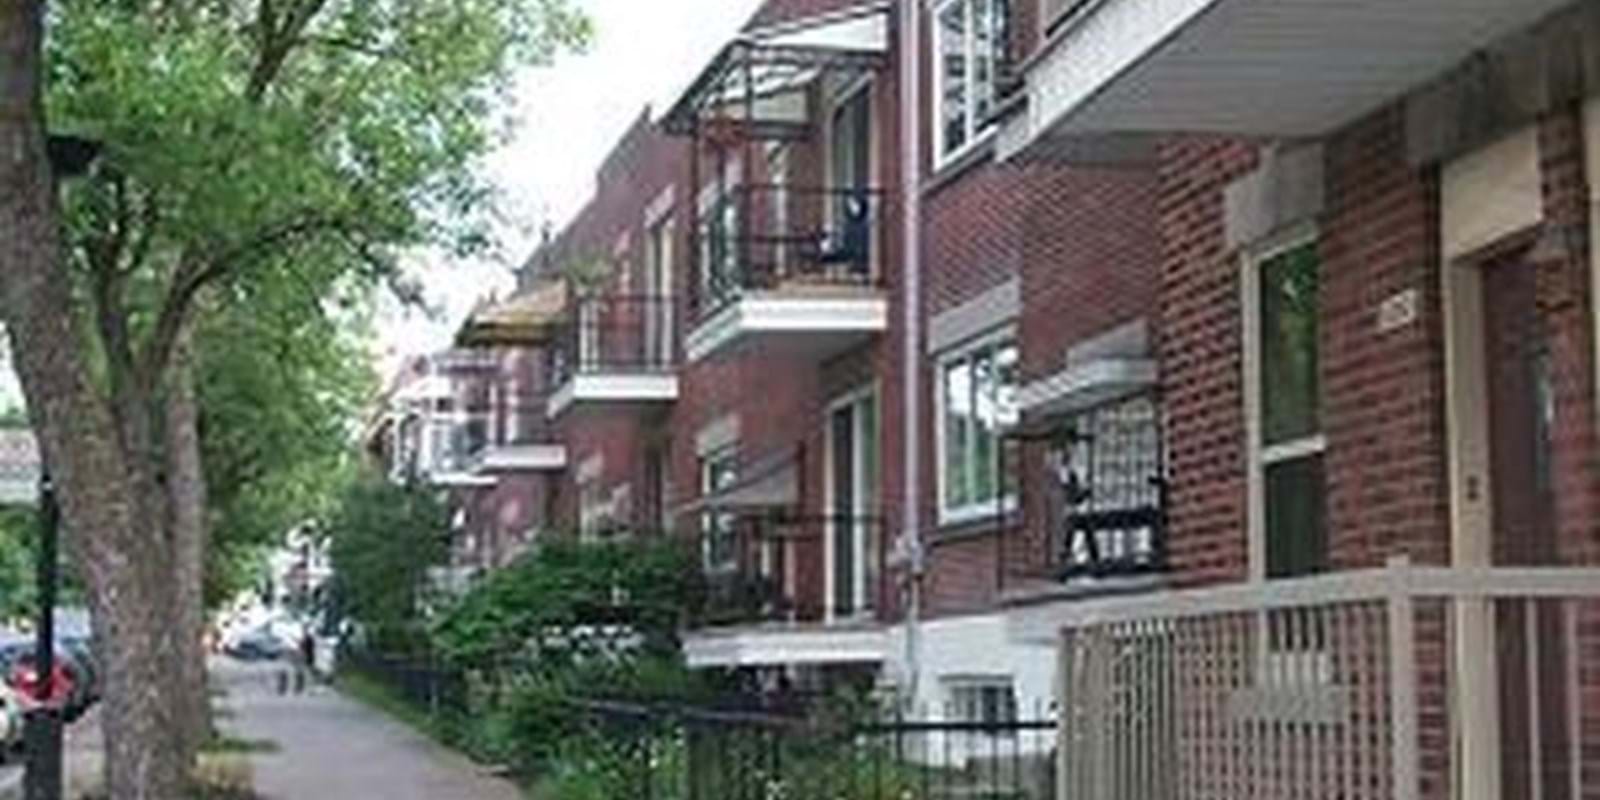 Les ventes de maisons existantes accusent une légère hausse en août